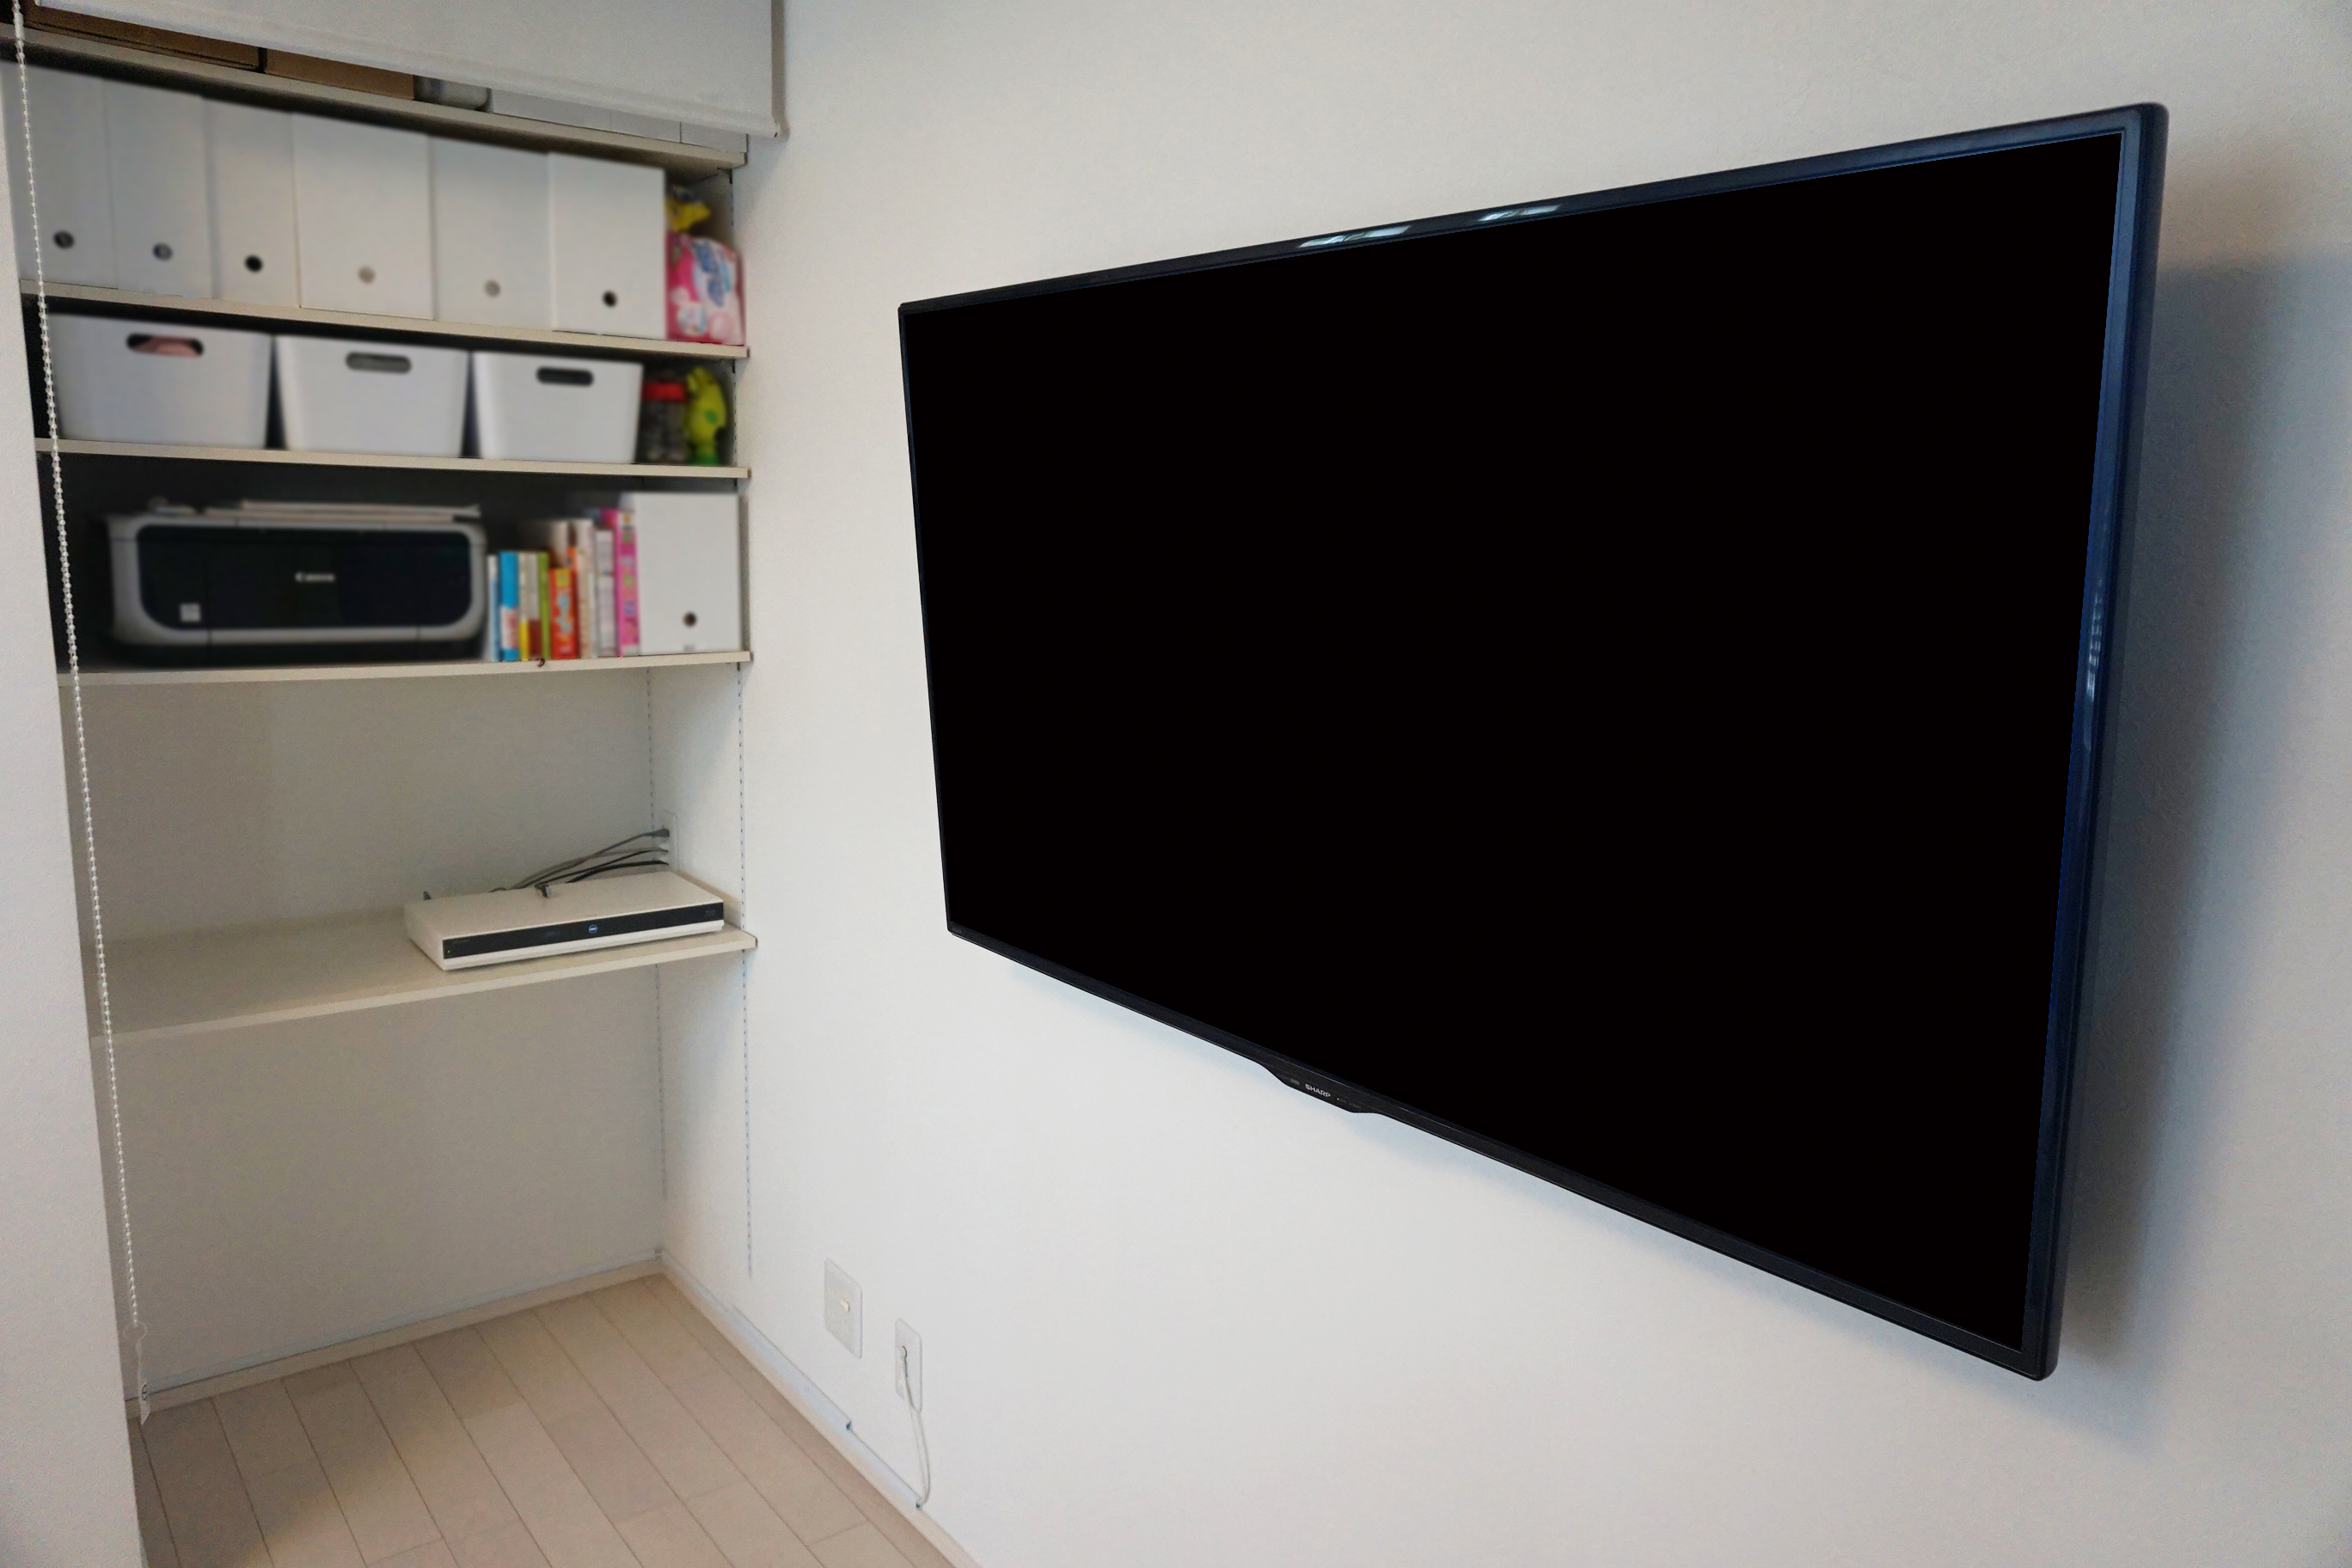 愛知県 知立市で既存の収納棚にブルーレイレコーダーを設置し スマートなテレビ環境を壁掛けで実現しました 壁掛けテレビはカトー電器